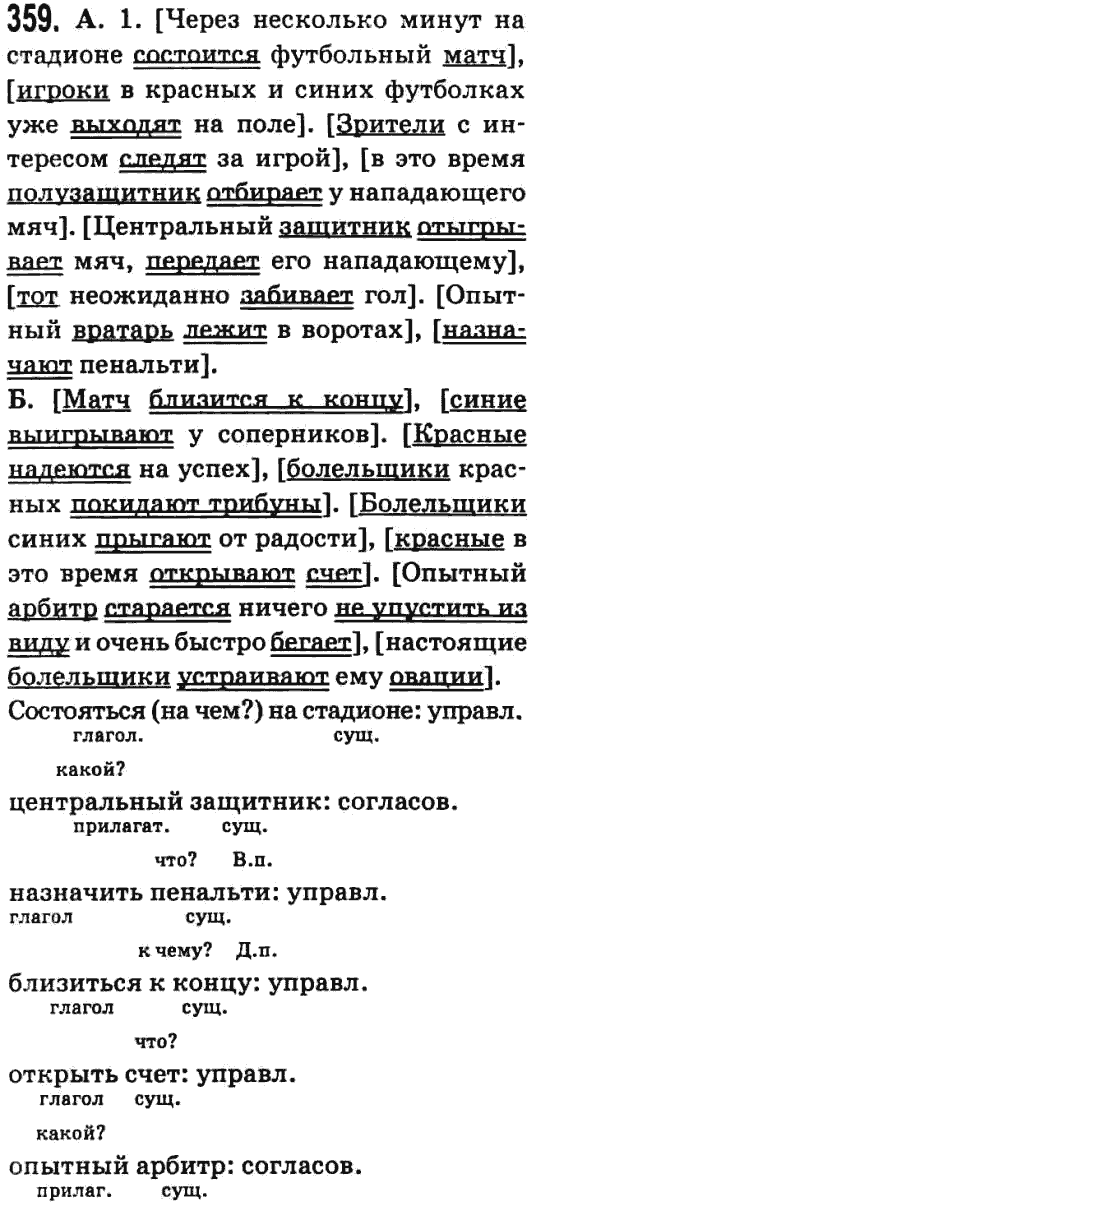 Русский язык 9 класс Баландина Н.Ф., Дегтярева К.В. Задание 359